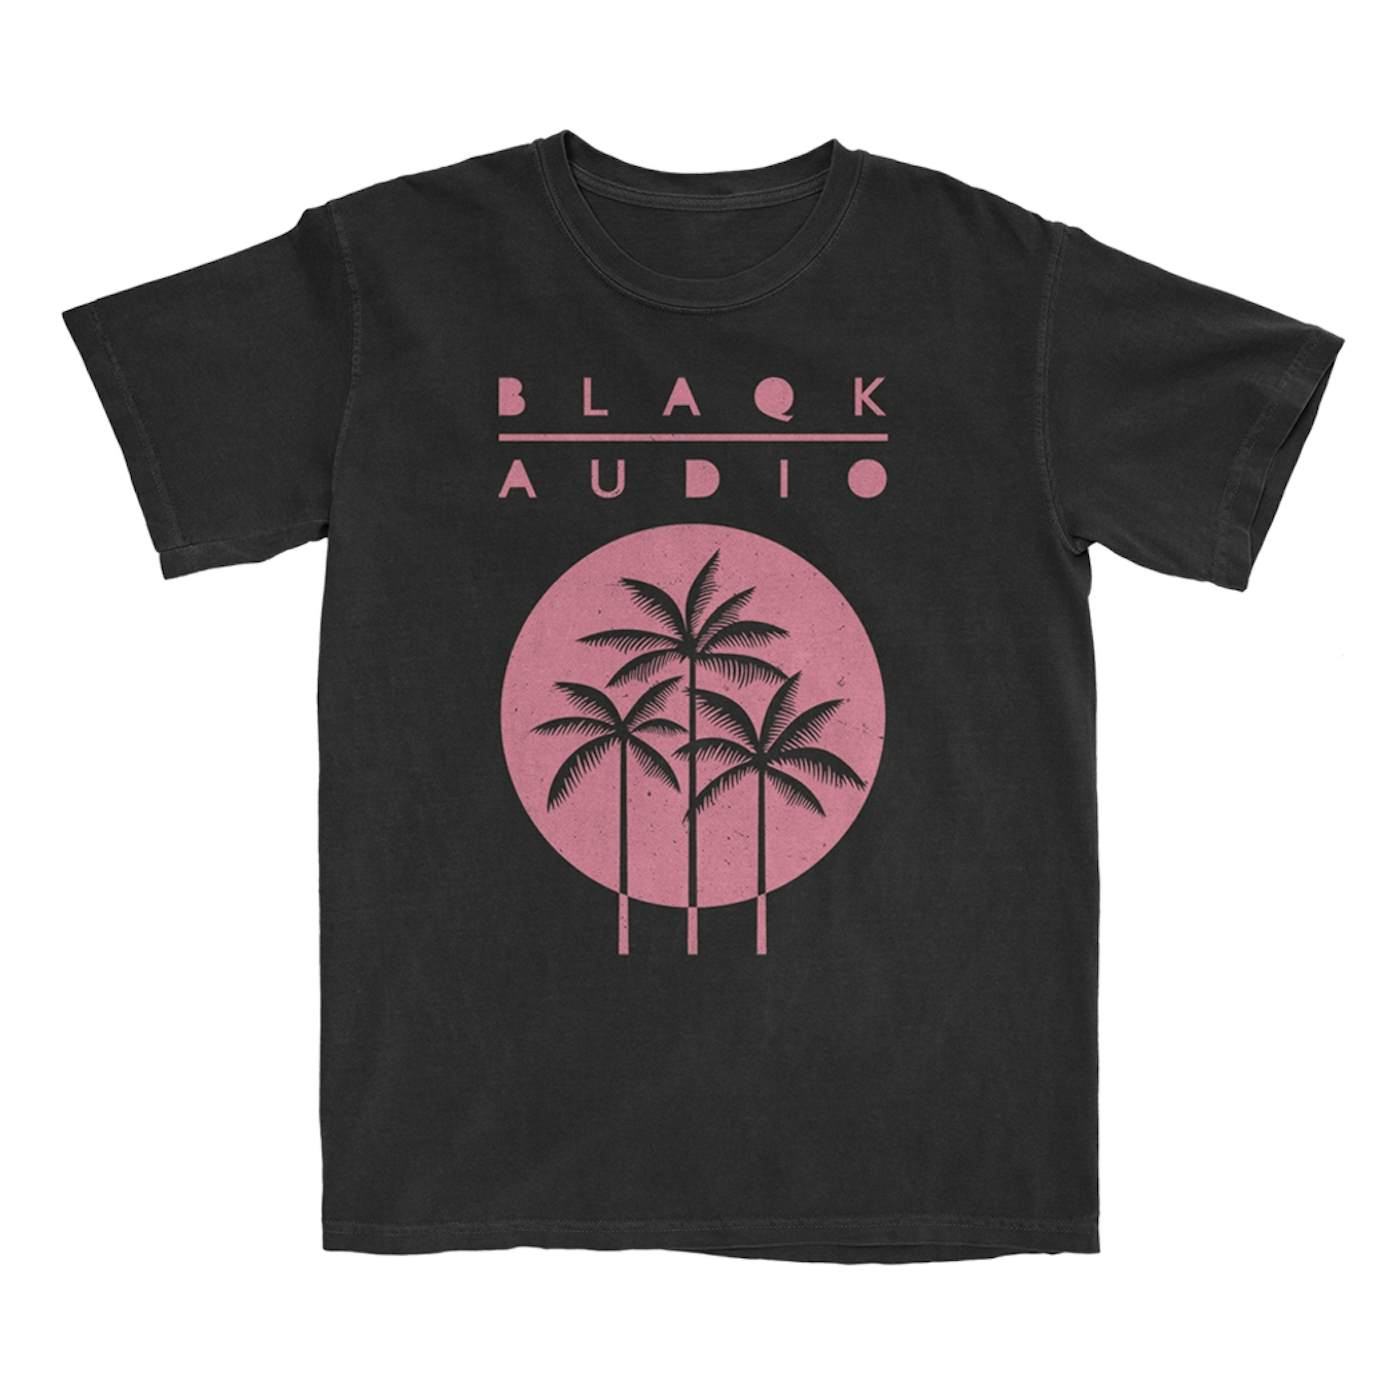 Blaqk Audio Beneath Palms Album T-Shirt